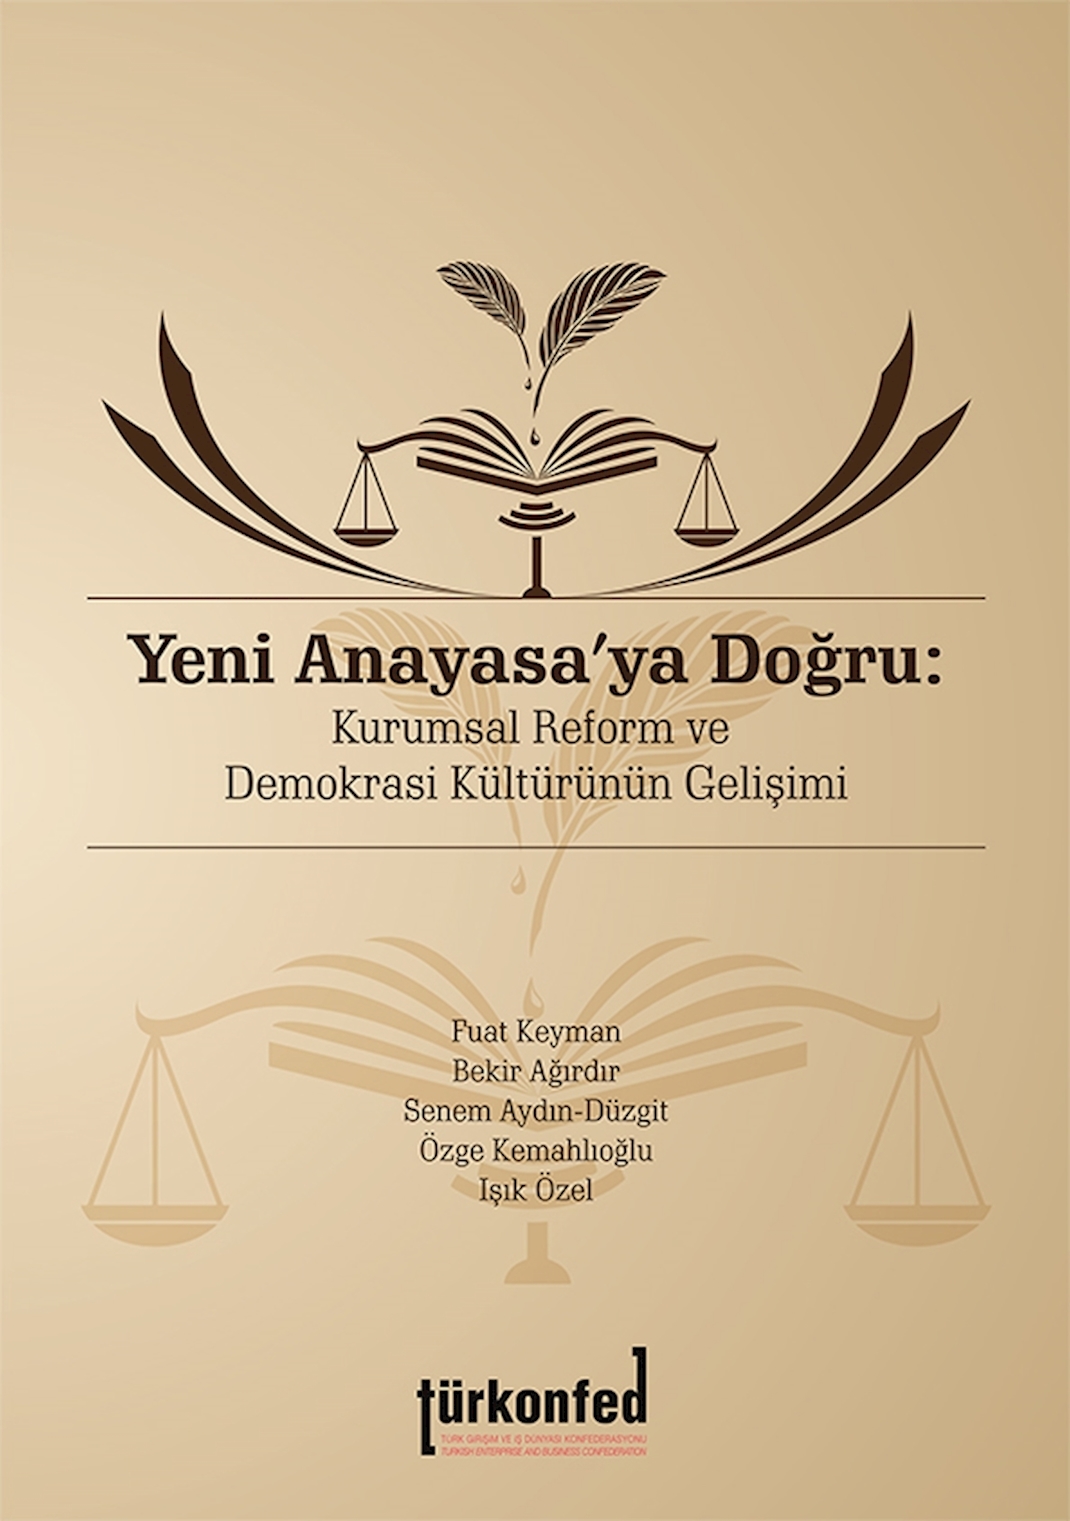 Yeni Anayasaya Doğru: Kurumsal Reform ve Demokrasi Kültürünün Gelişimi